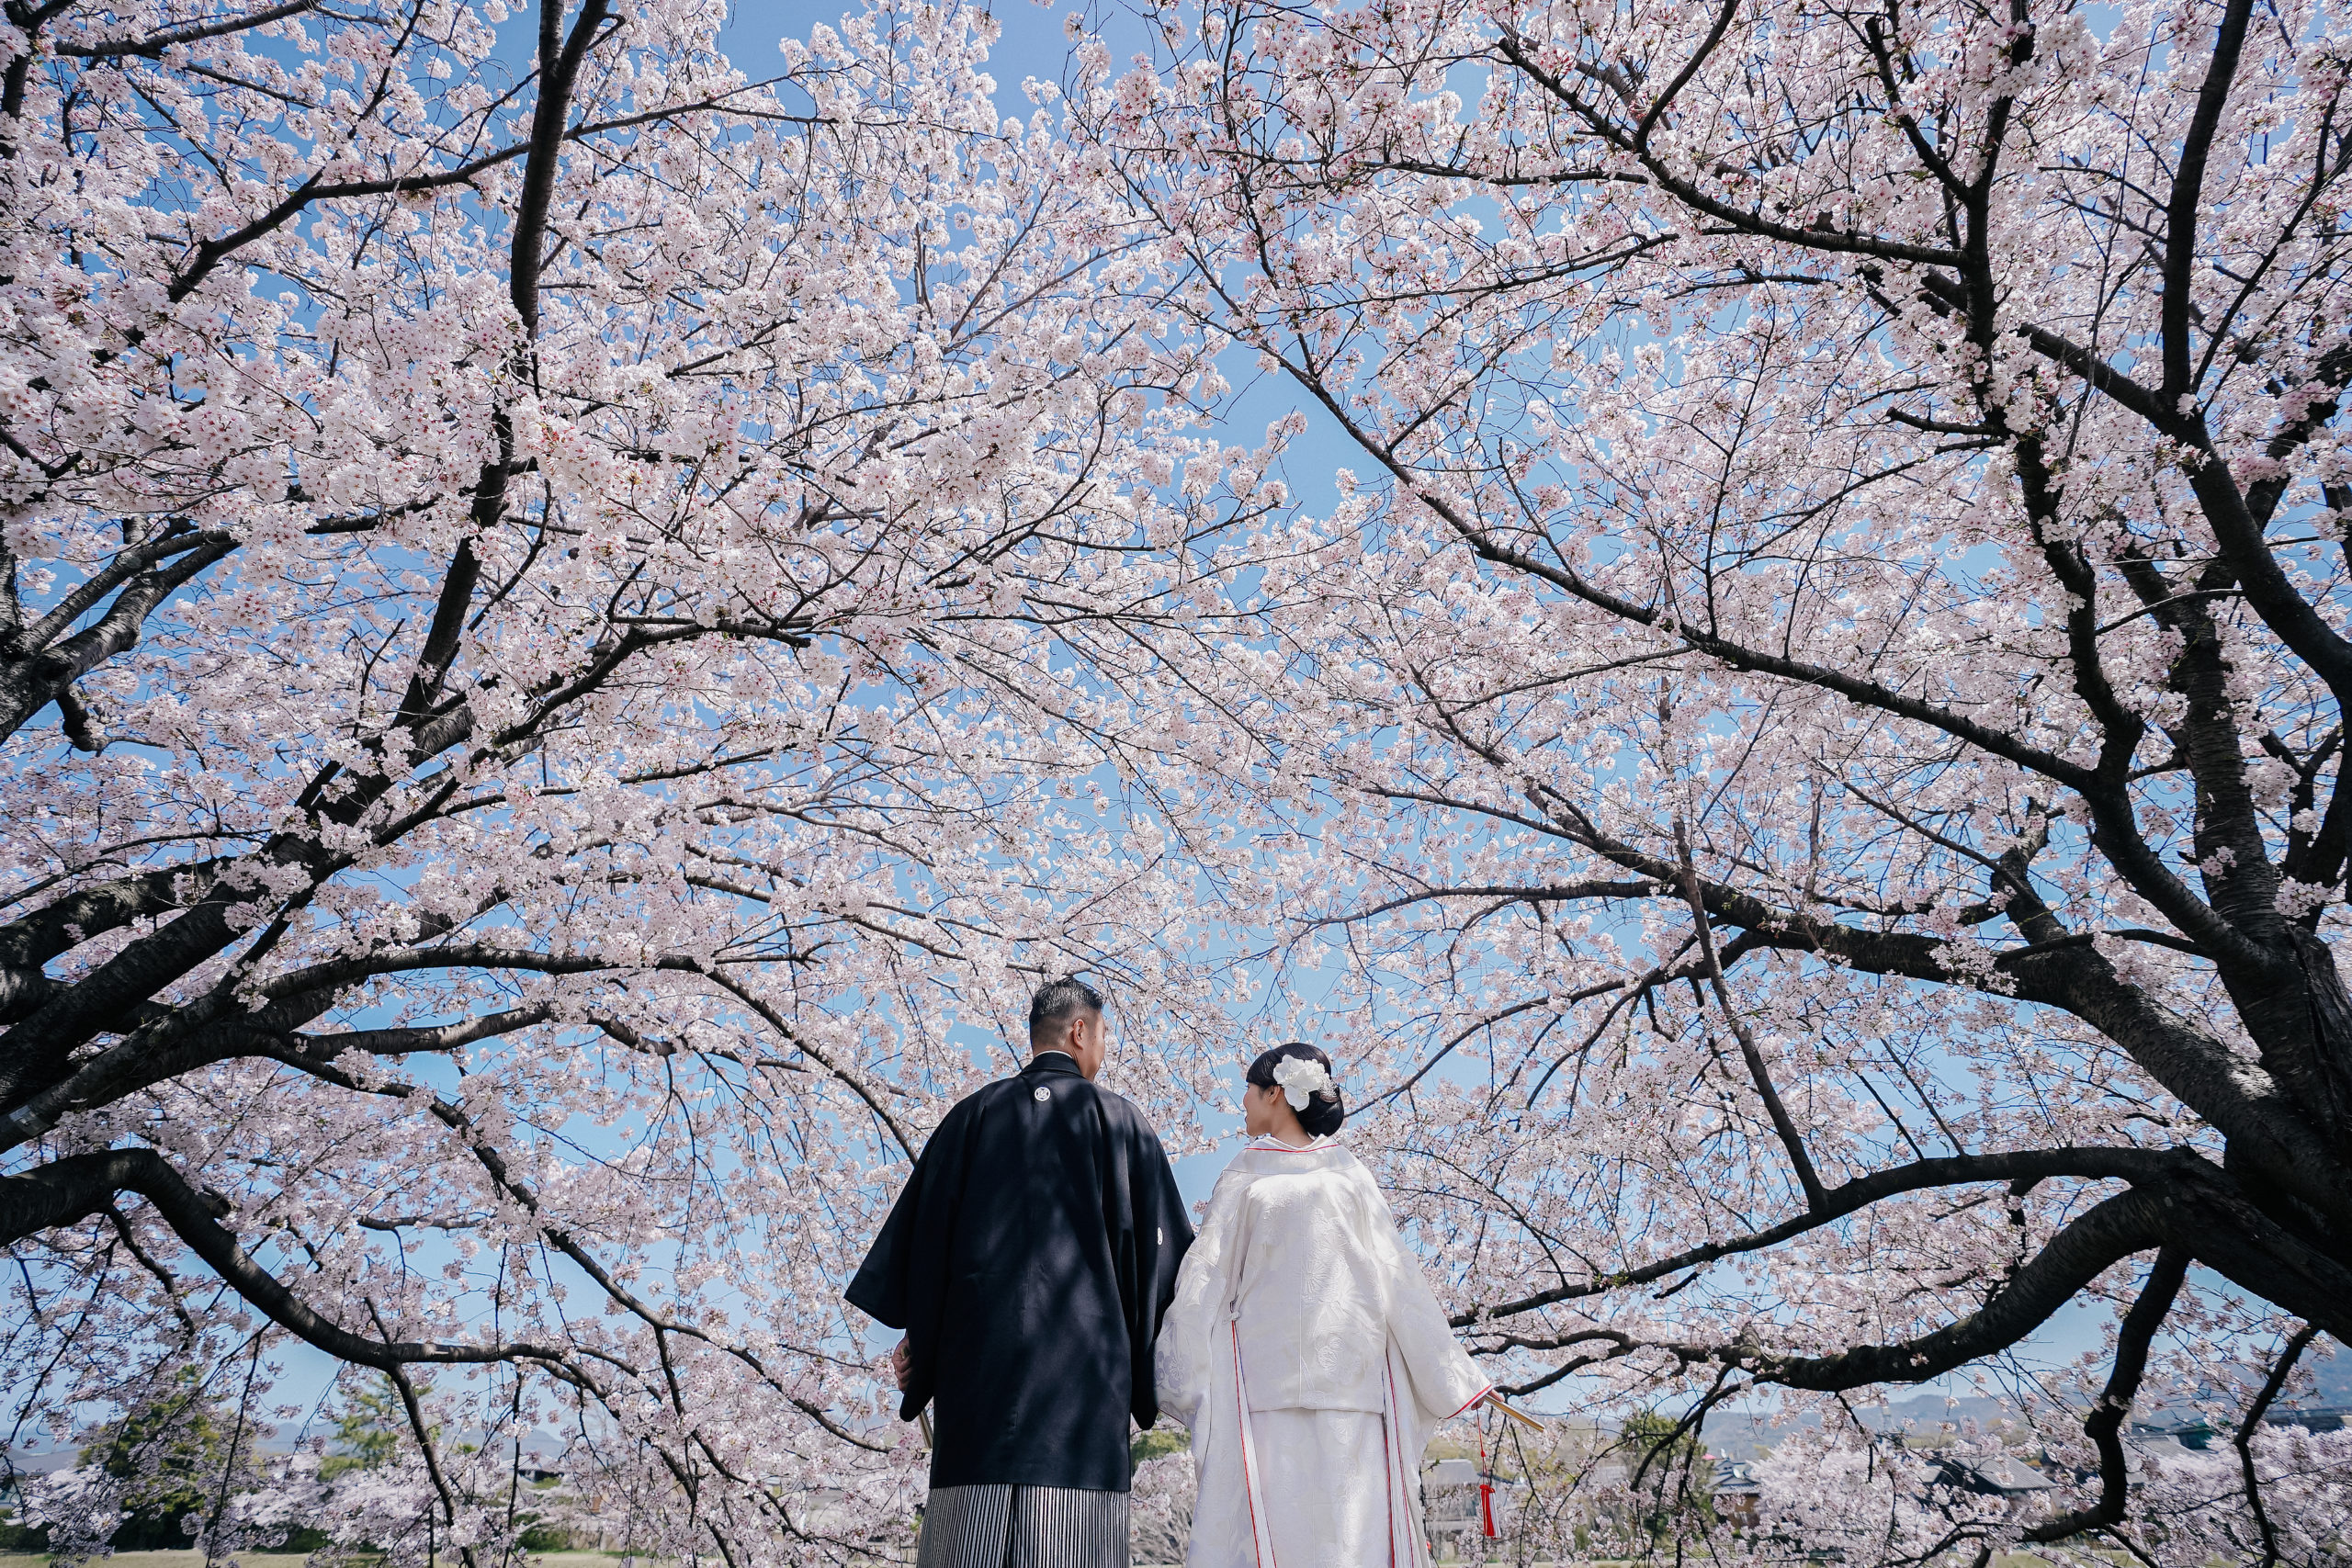 鴨川の桜の下、和装の二人を後ろから撮影したウェディングフォト。